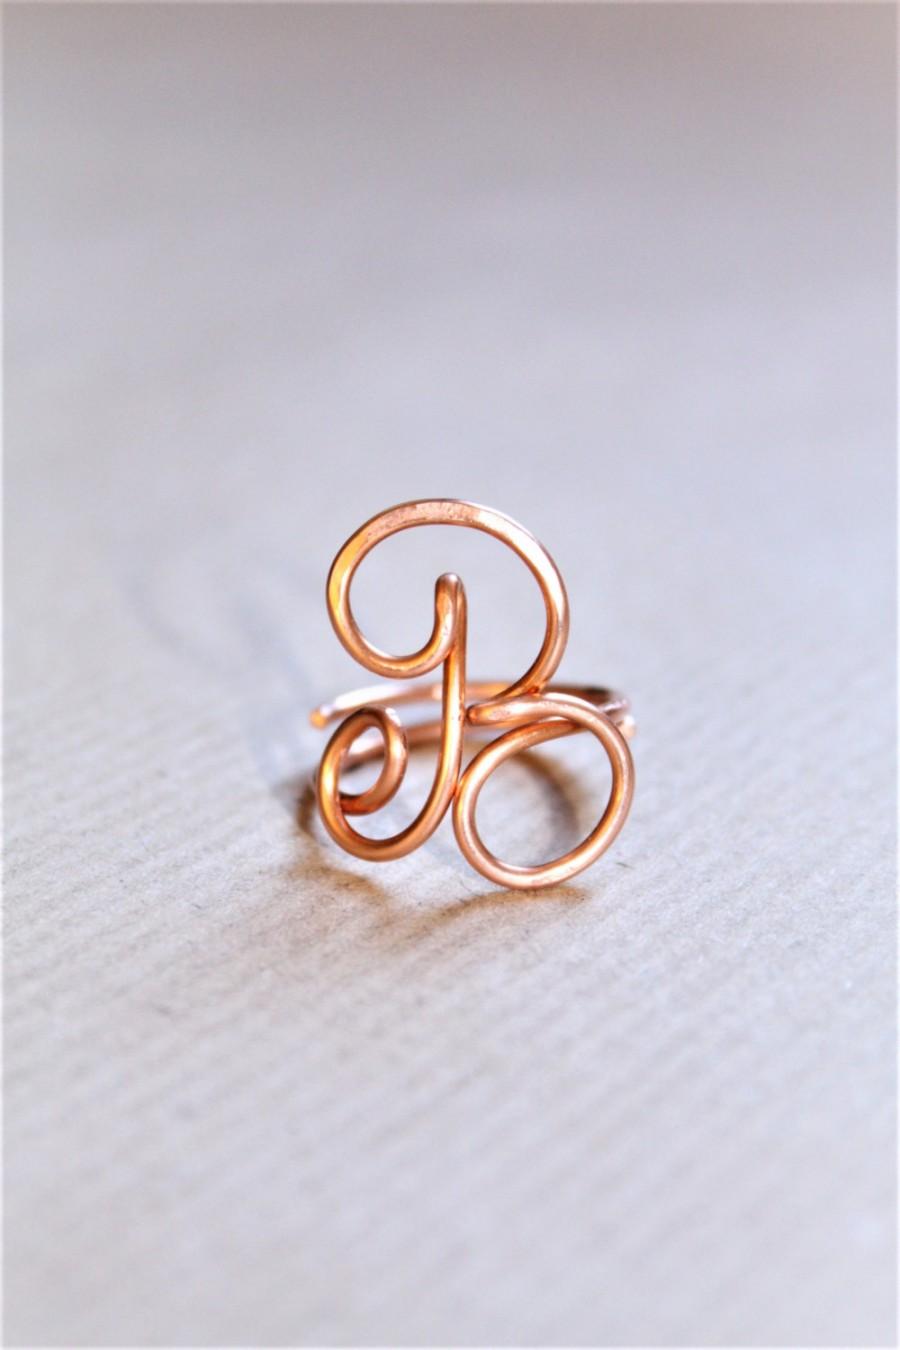 زفاف - Initial ring, letter A B F ring, personalized wire initial ring, wire ring, personalized ring, adjustable ring, wire letters, letter ring